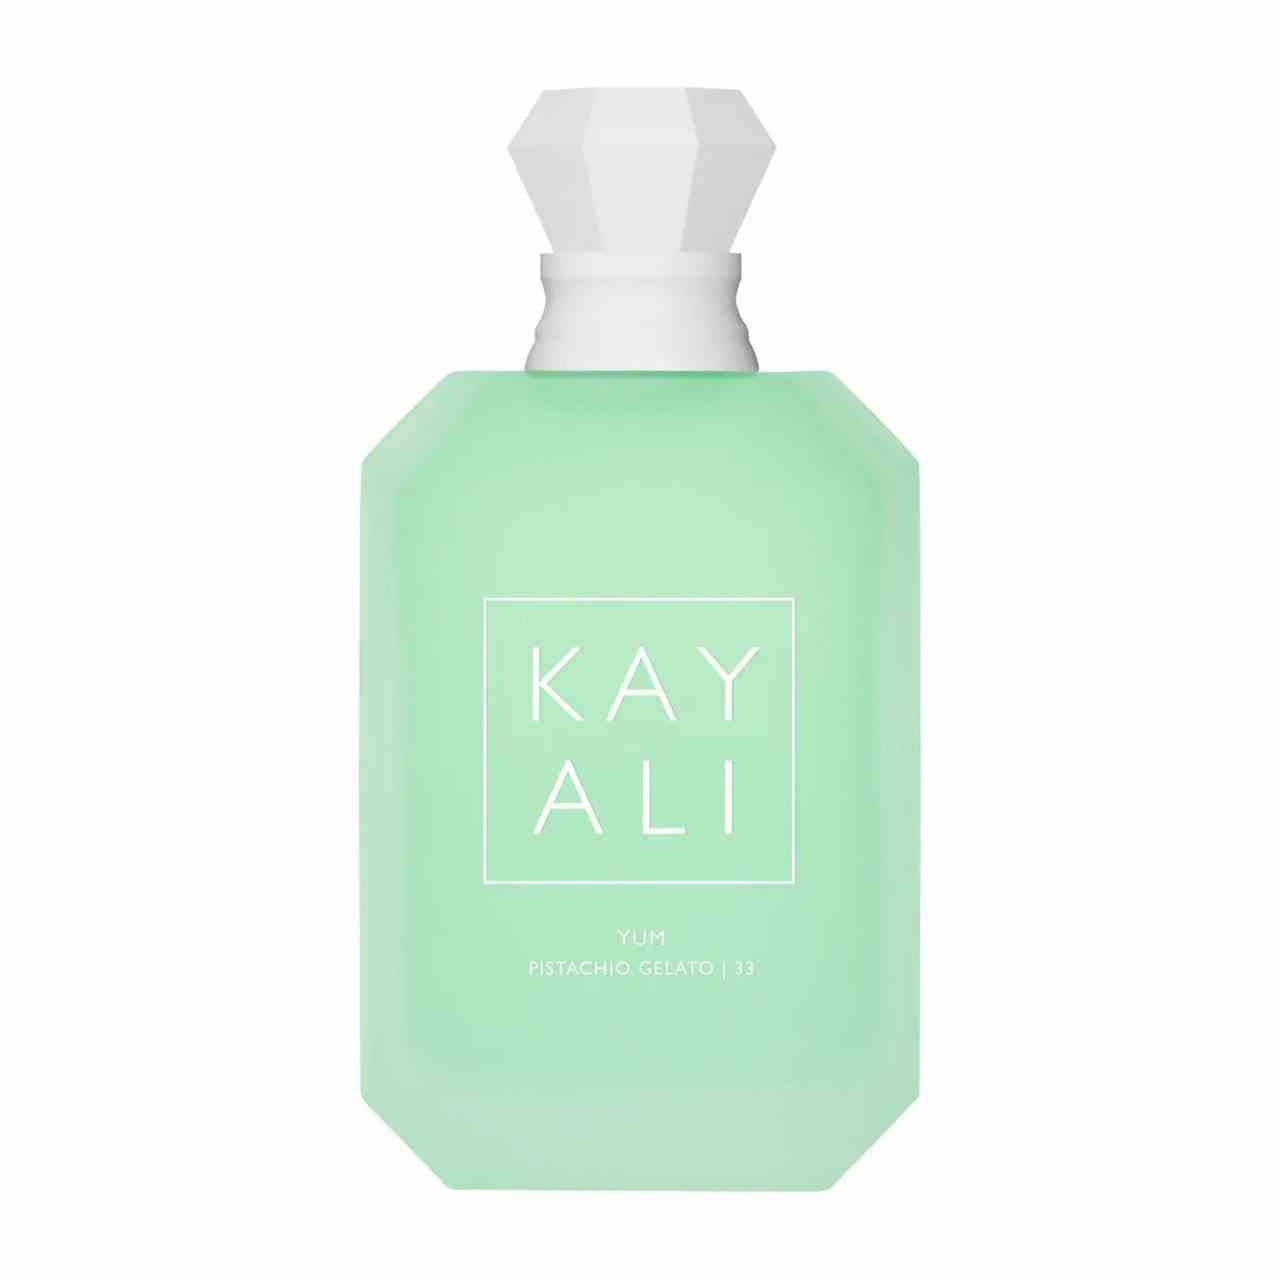 Kayali Yum Pistachio Gelato blassgrüne sechseckige Parfümflasche mit weißer Diamantkappe auf weißem Hintergrund